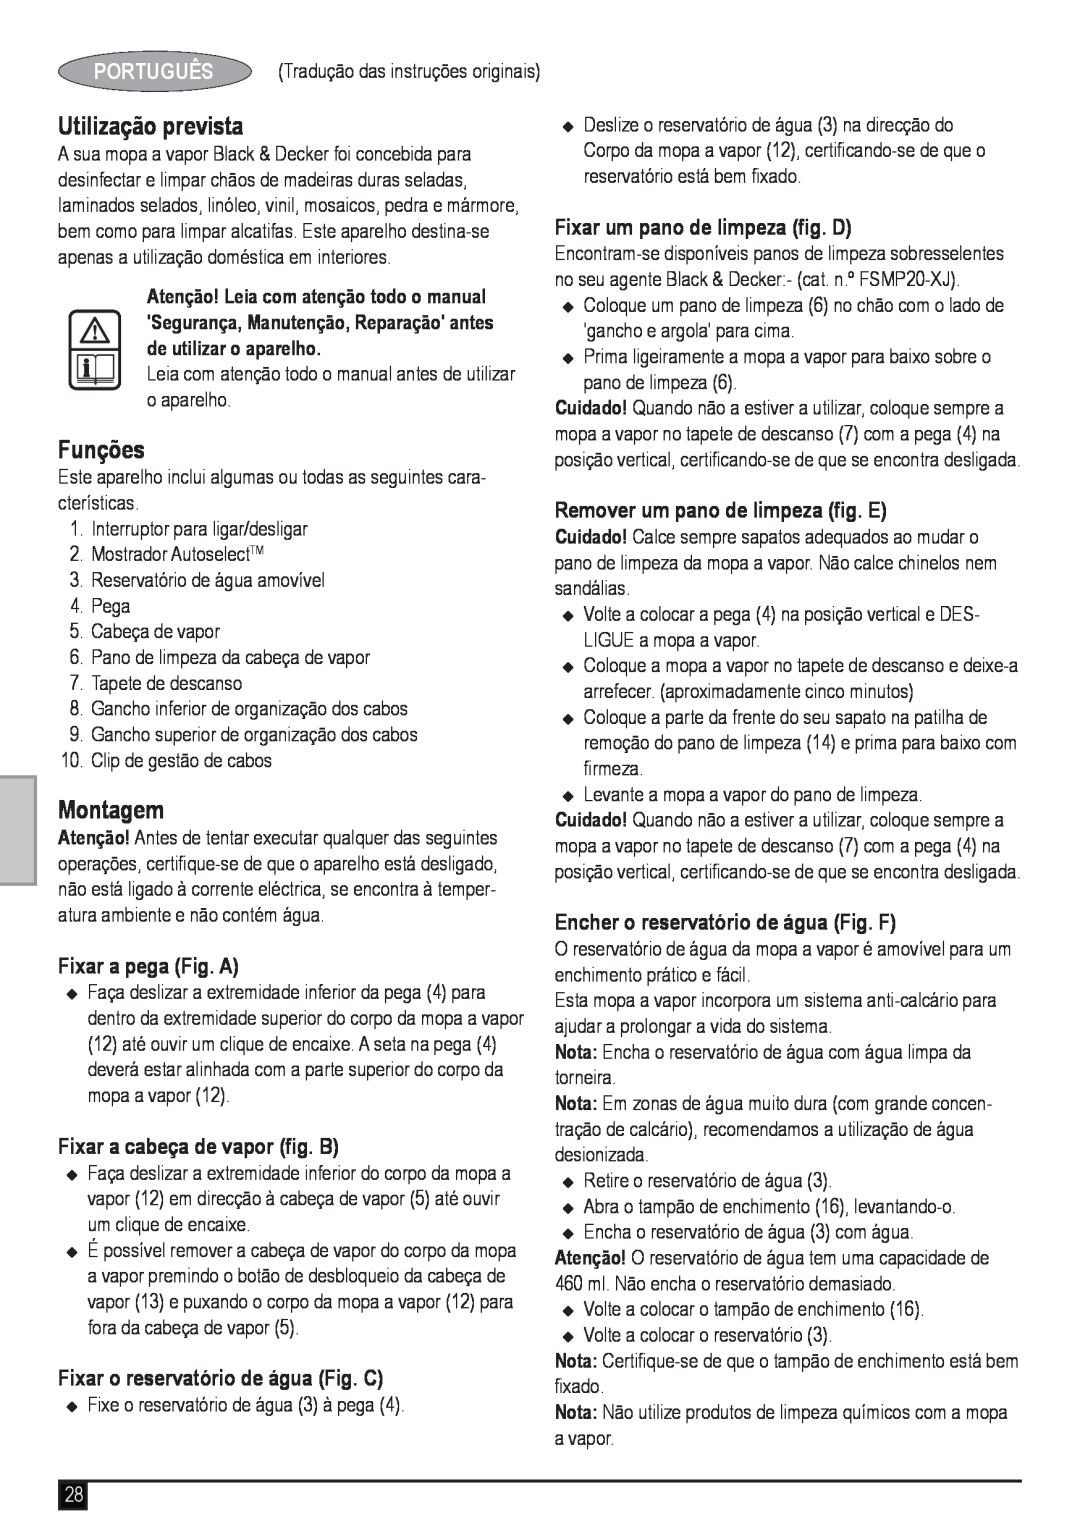 Black & Decker FSM1620 manual Utilização prevista, Funções, Montagem, Português, Fixar a pega Fig. A 